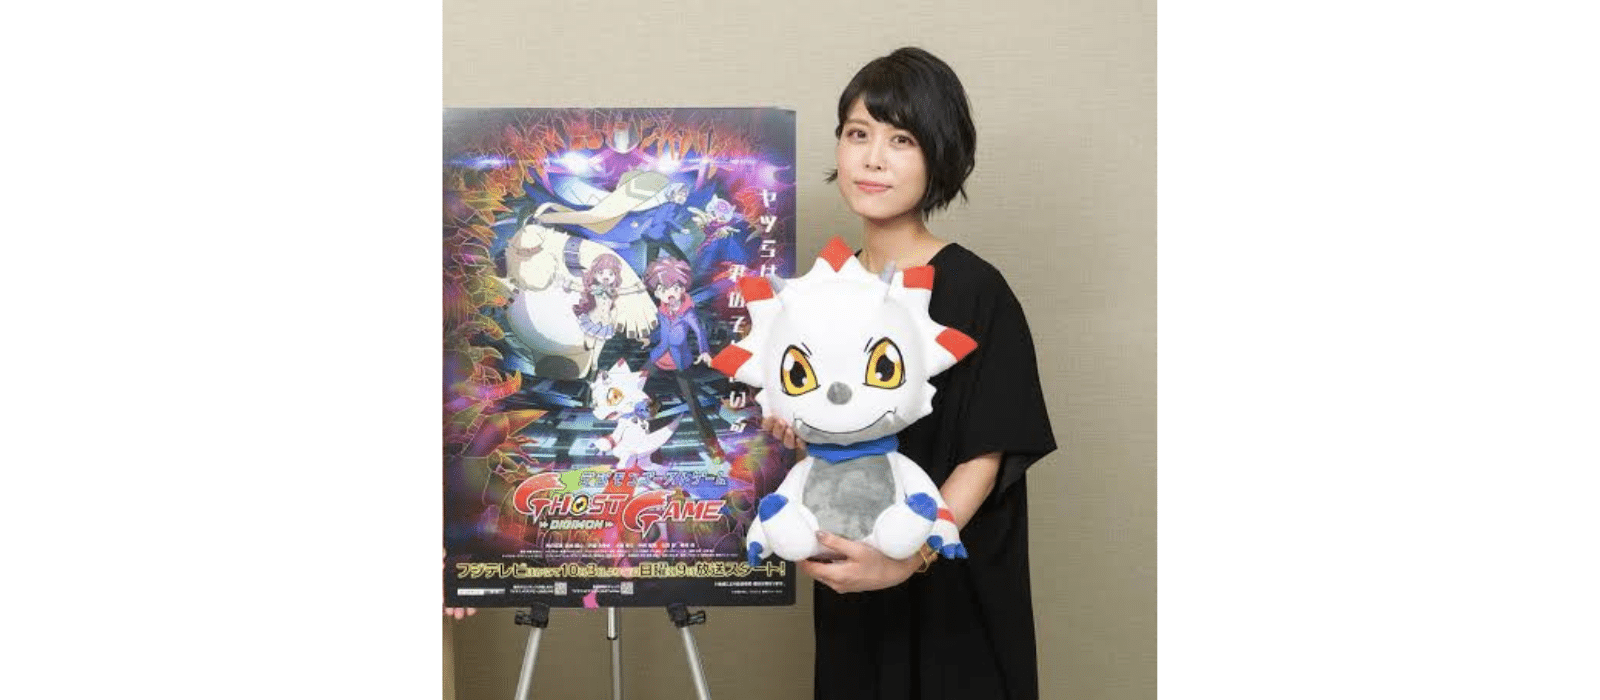 miss kobayashi's dragon maid voice actors